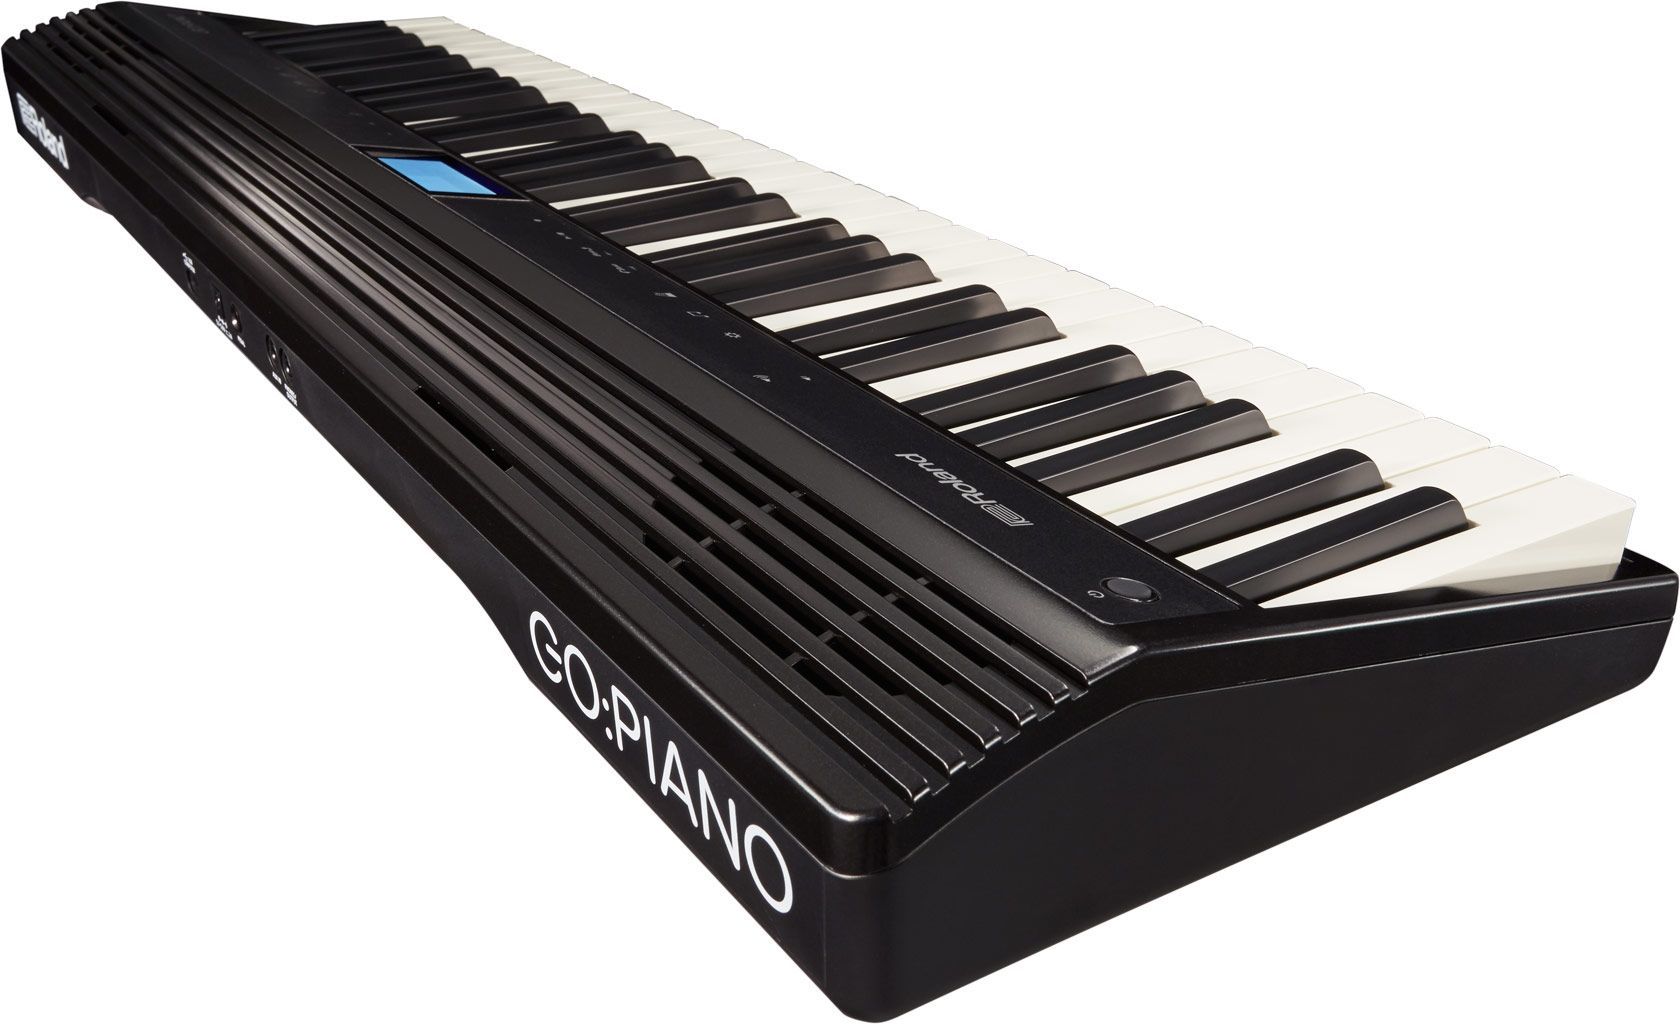 Roland Go Piano Stagepiano mit Lautsprechern, 61 Tasten mit Anschlagdynamik 